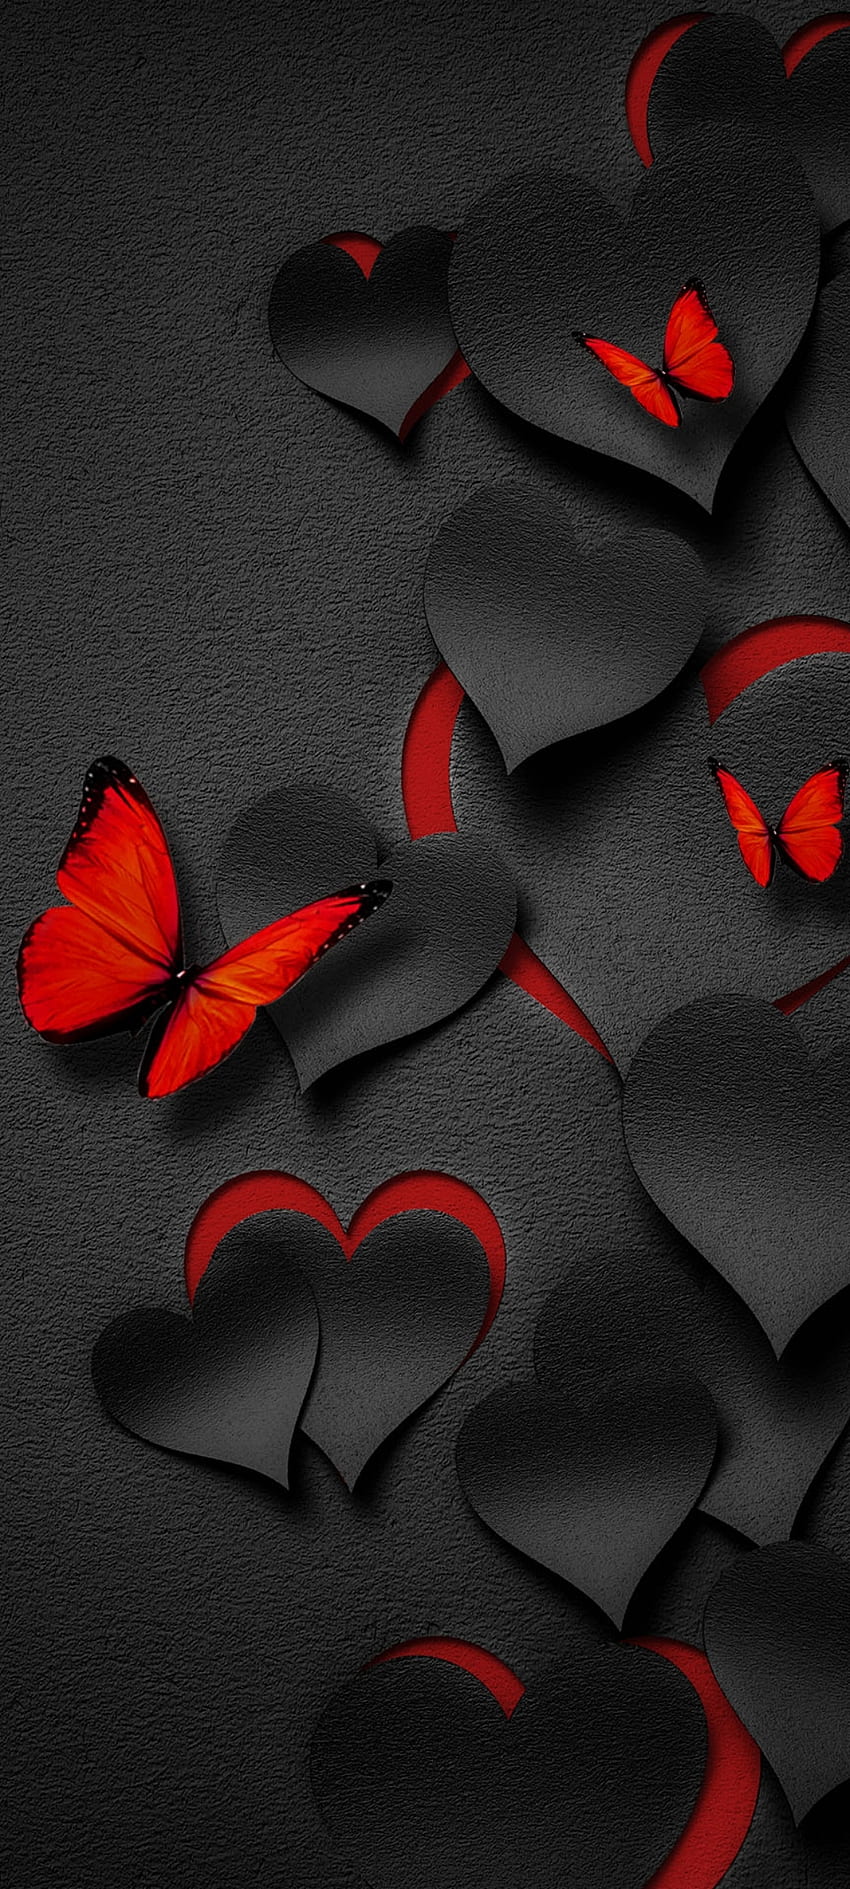 The Black Hearts, love, red, art, butterfly, metal, luxury, heart ...